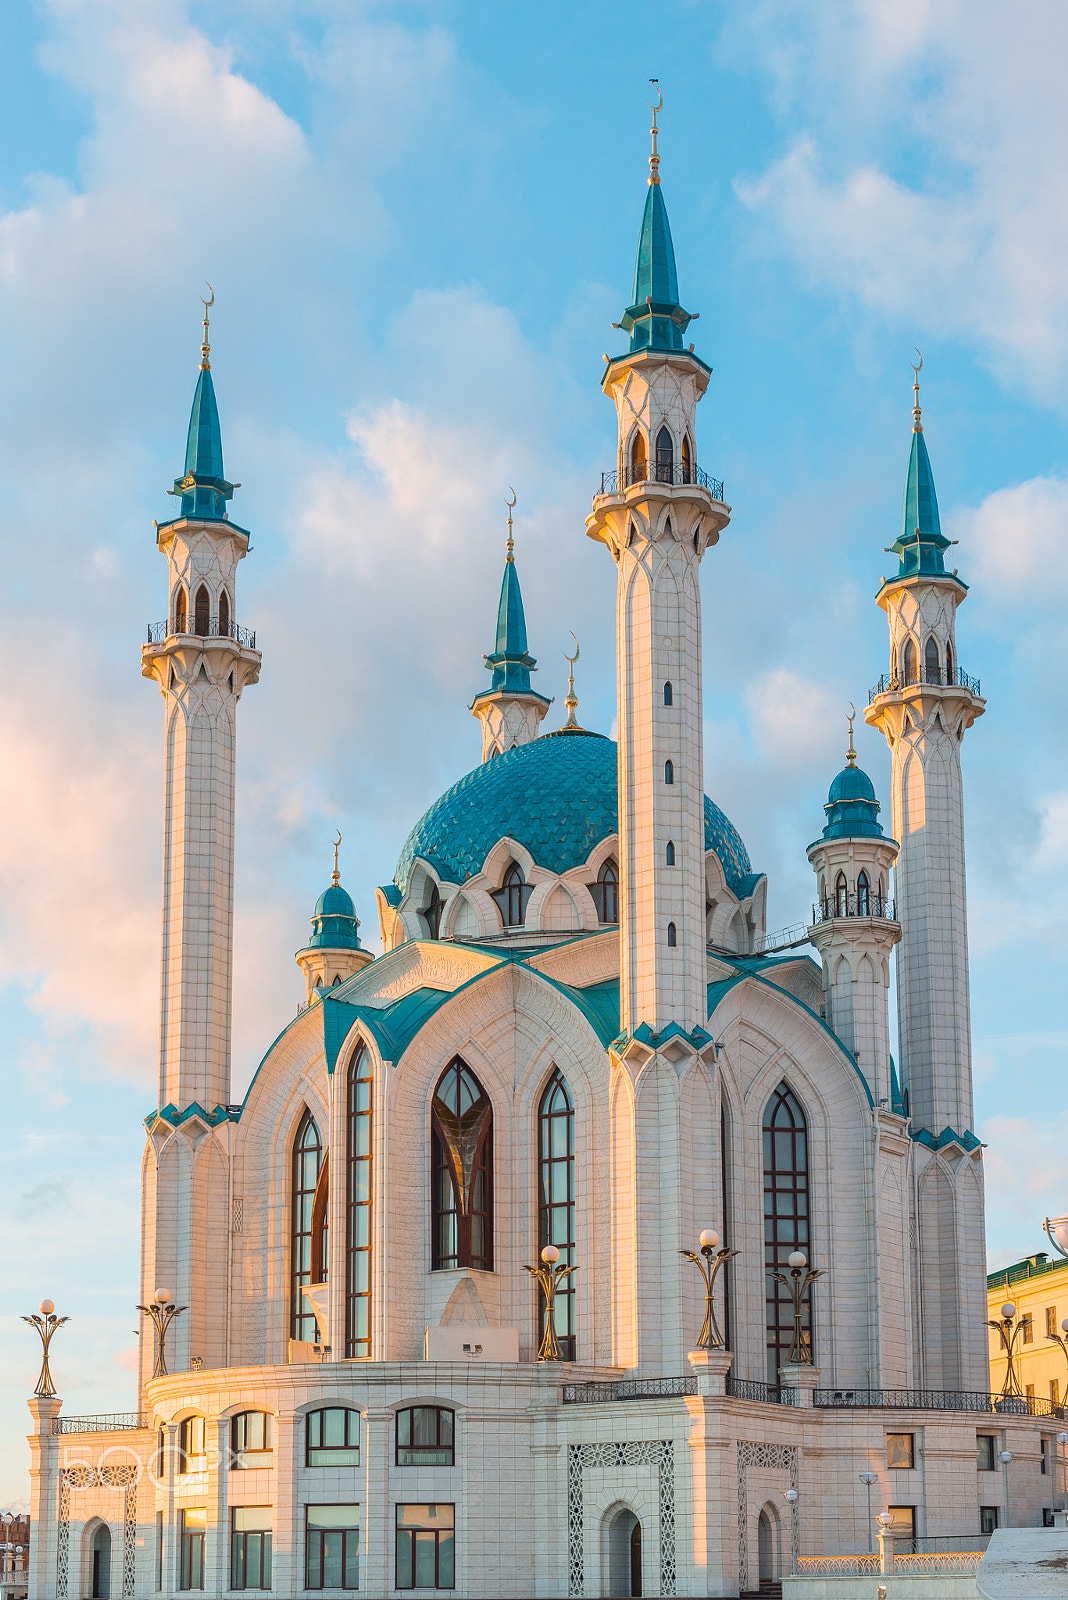 Nikon D600 sample photo. Kul-sharif mosque in kazan kremlin at sunset in tatarstan, russia photography